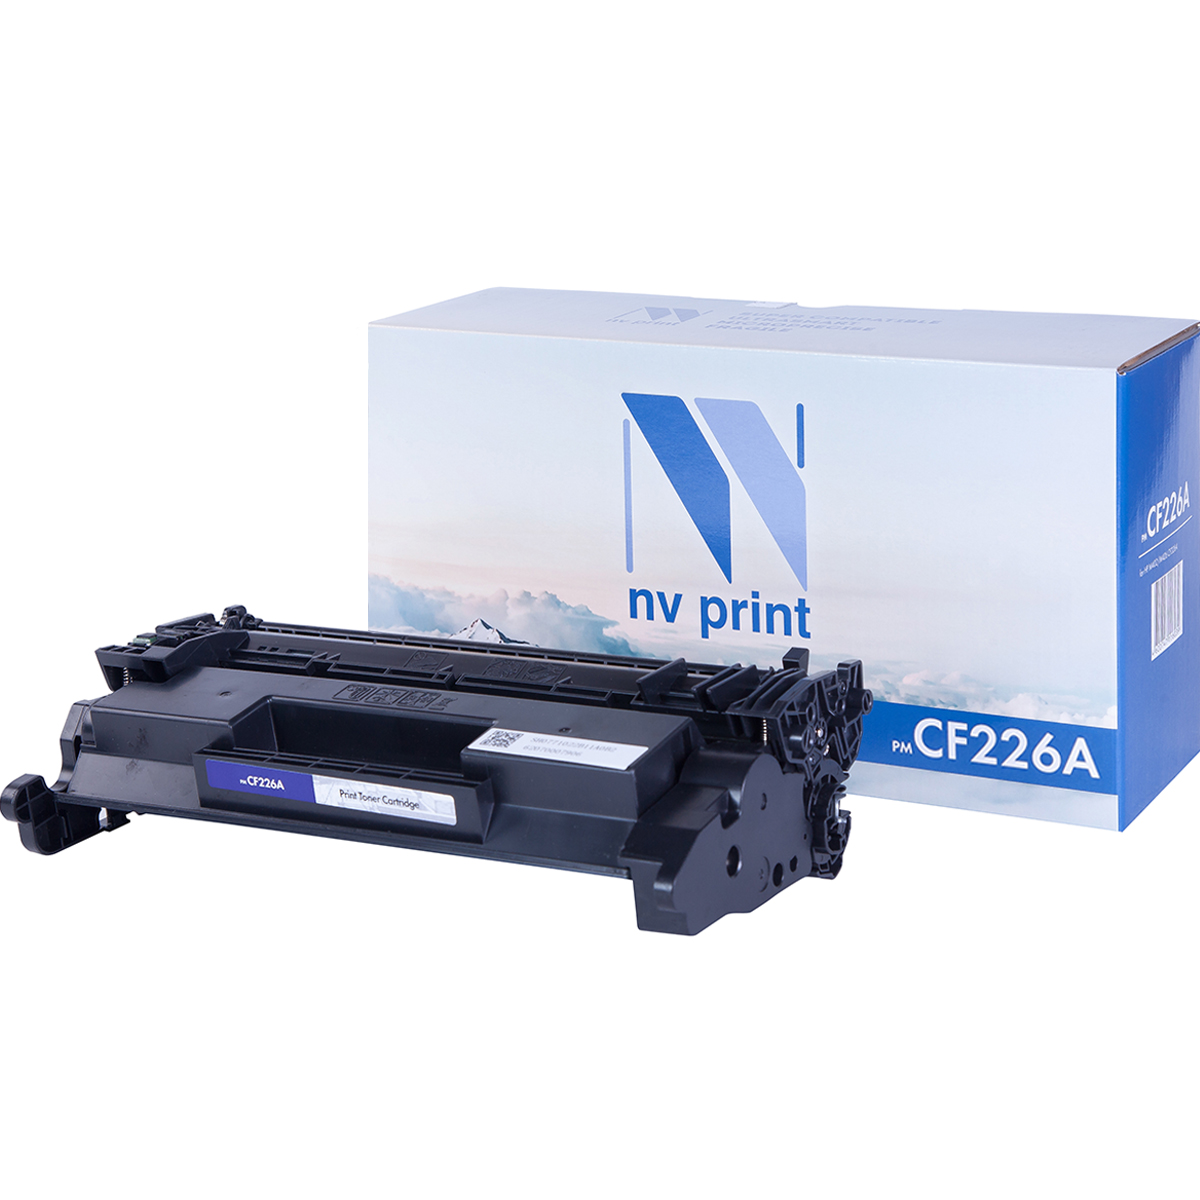 Картридж NV Print CF226A для Нewlett-Packard M402/M426 (3100k) картридж nv print cf226x для нewlett packard m402 m426 9000k